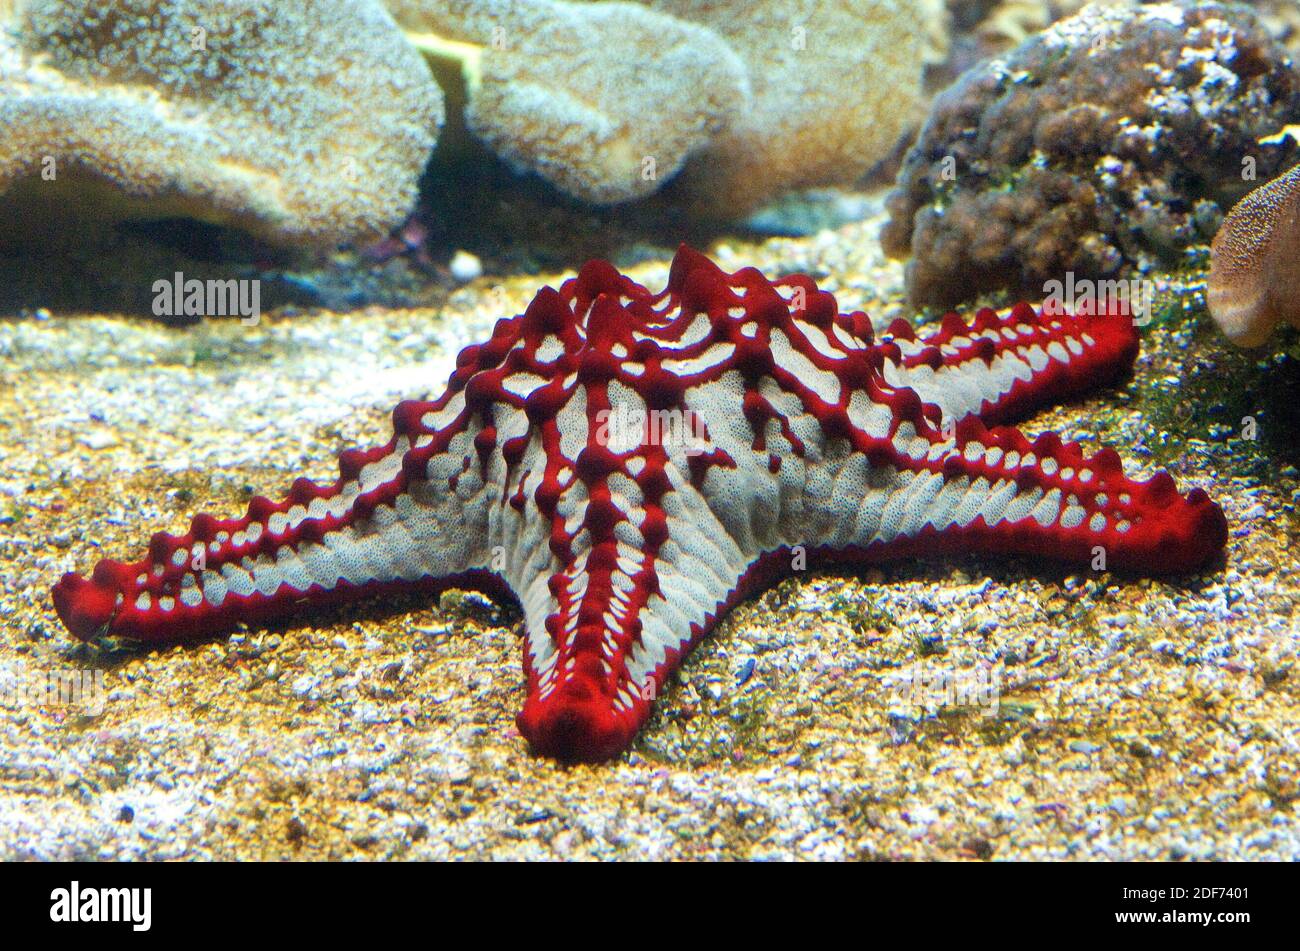 Red Knob Sea star (Protoreaster linckii) est une étoile de mer carnivore originaire de l'Indo-Pacifique. Banque D'Images